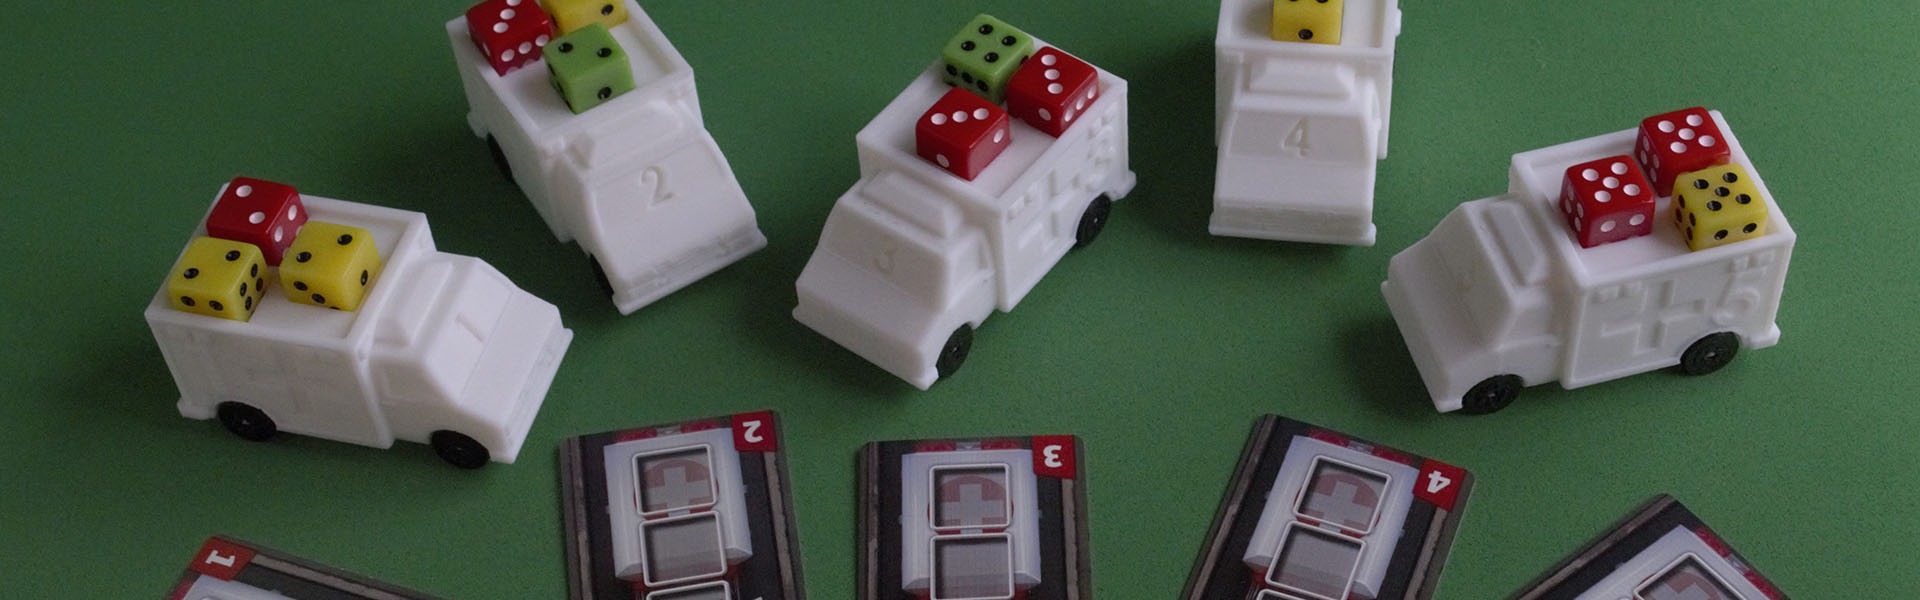 Ambulancias en 3D para juego de mesa Dice Hospital